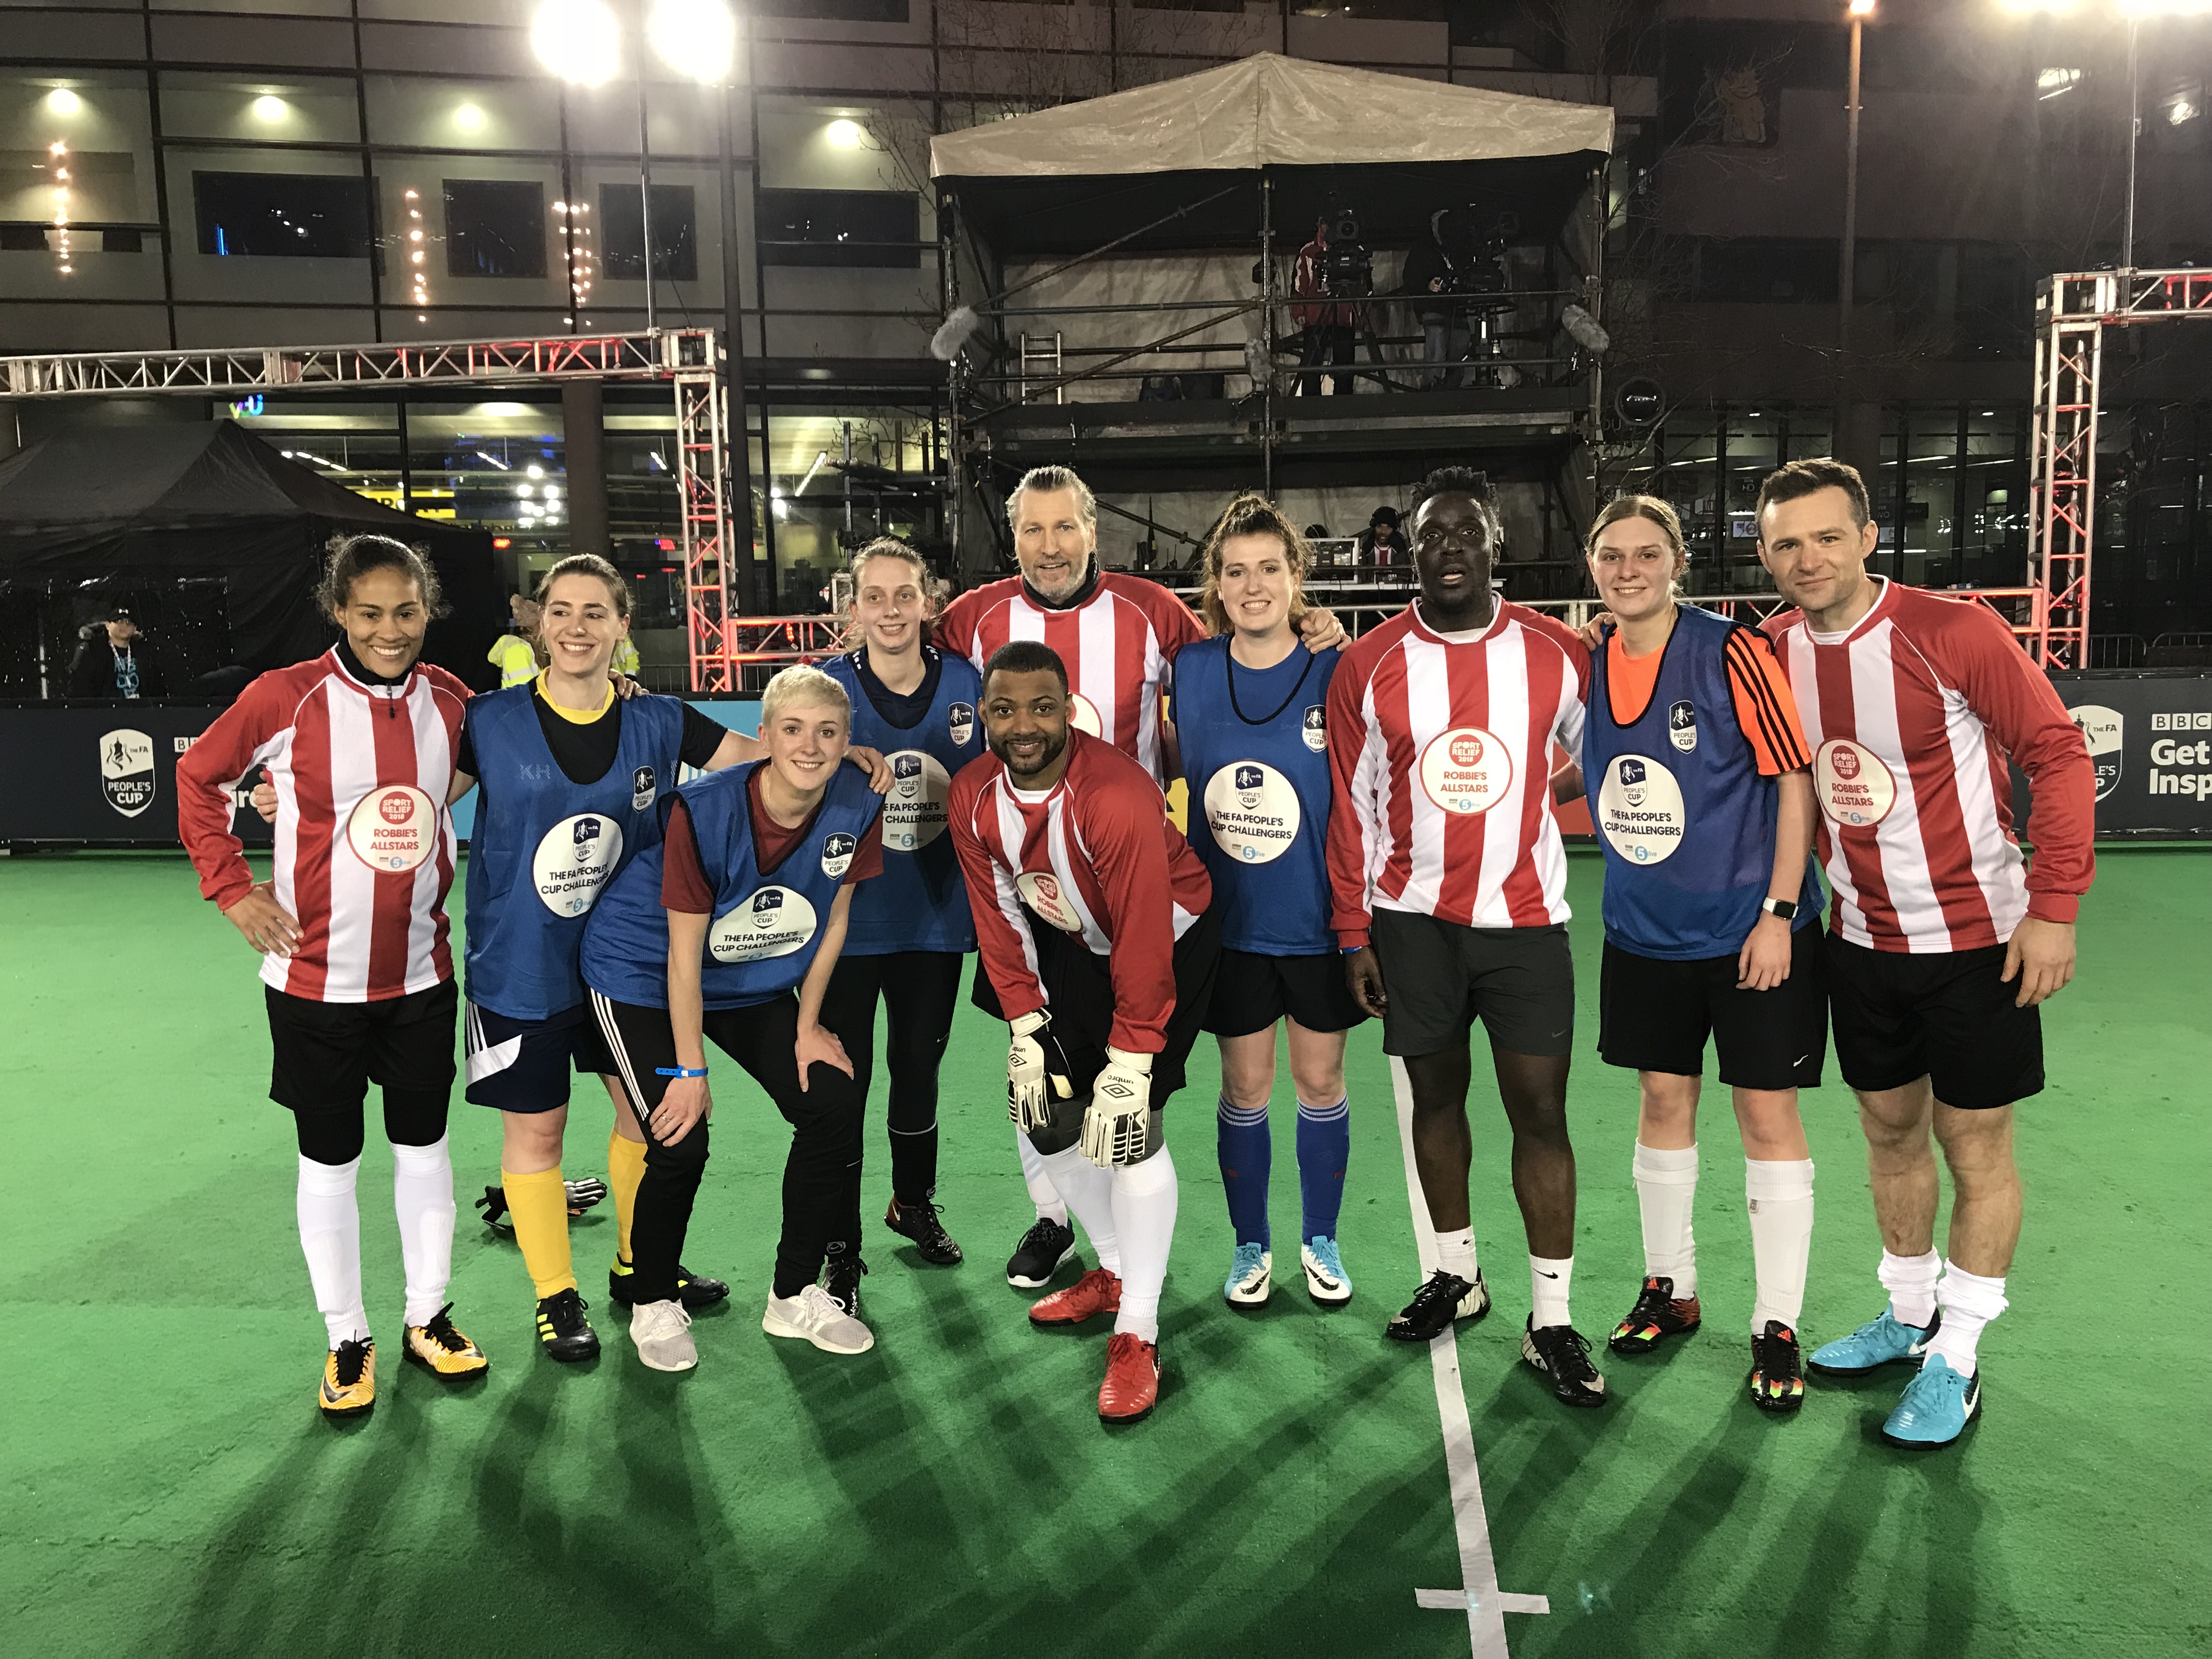 Members of Birmingham MedSoc Women’s Football Club and members of Robbie Savage's all-star celebrity team